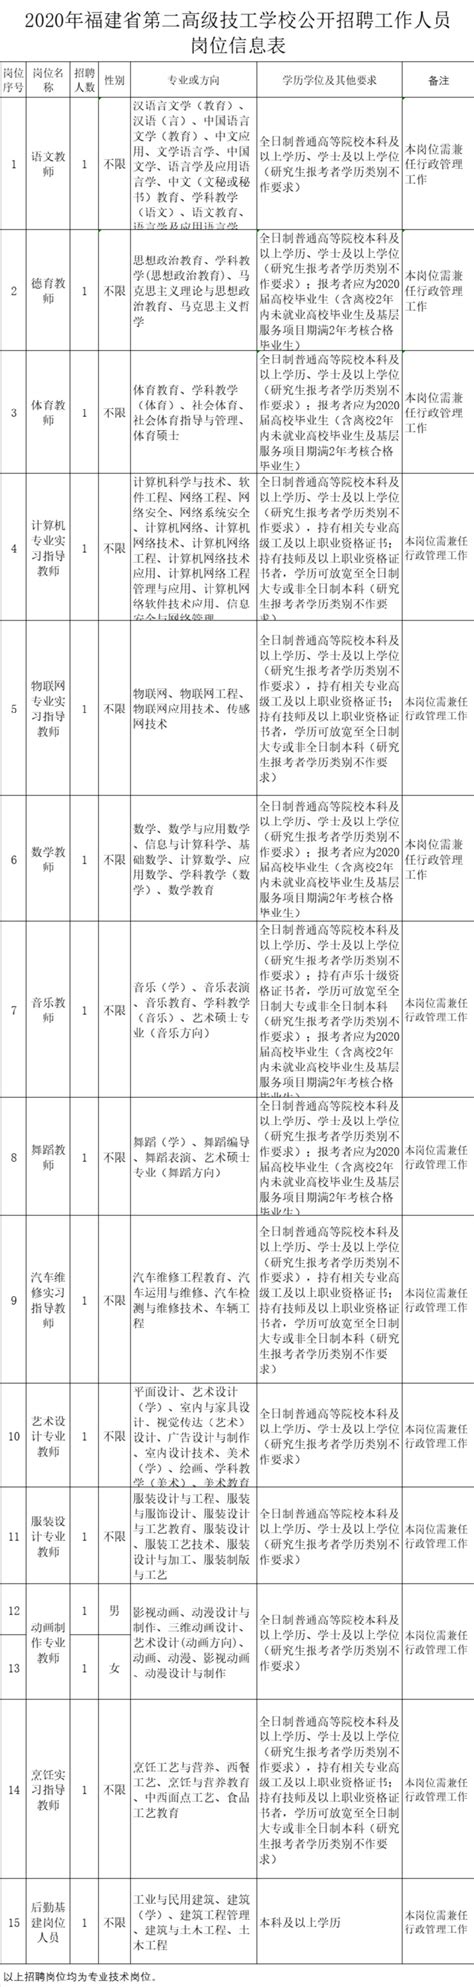 福建省事业单位公开招聘考试报名平台 - 公务员考试网